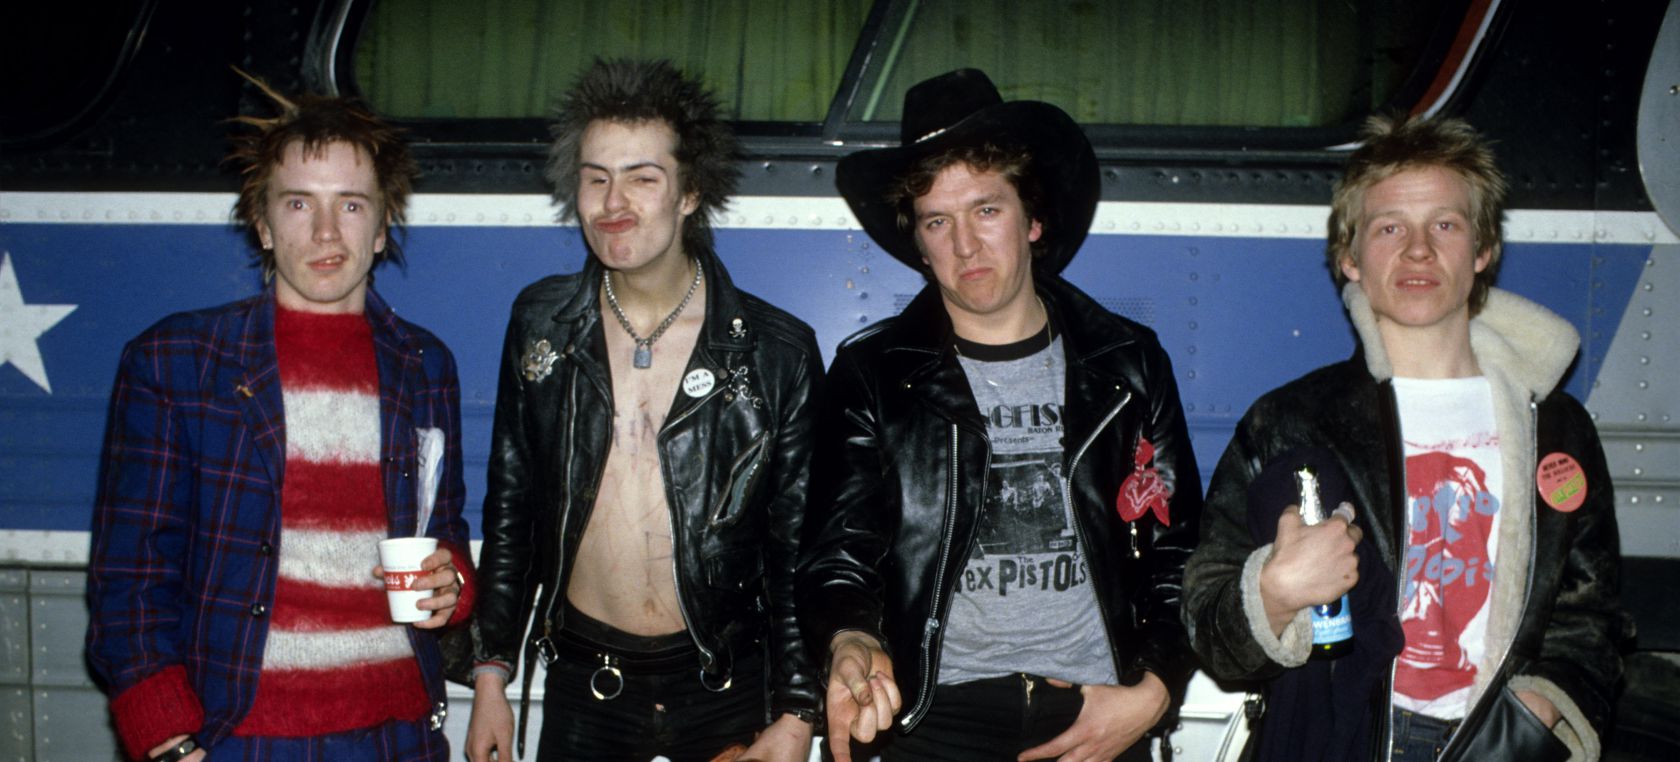 La vida de Steve Jones, guitarrista de Sex Pistols, se convertirá en serie de televisión